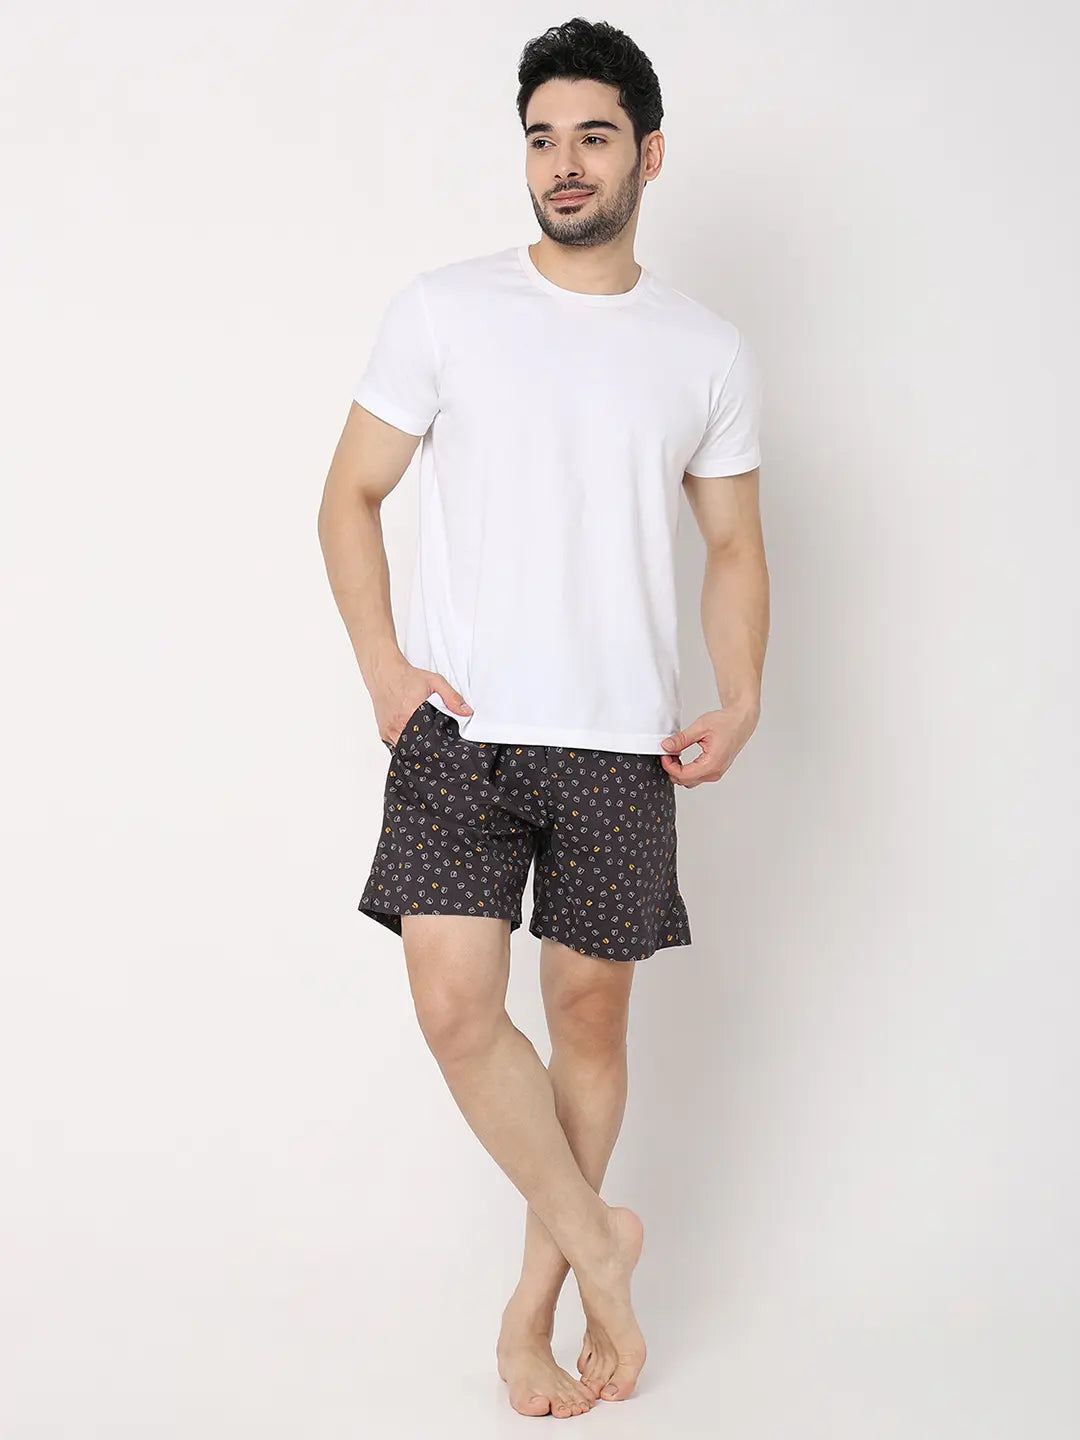 Underjeans by Spykar Men Premium Black Cotton Blend Regular Fit Boxer Shorts